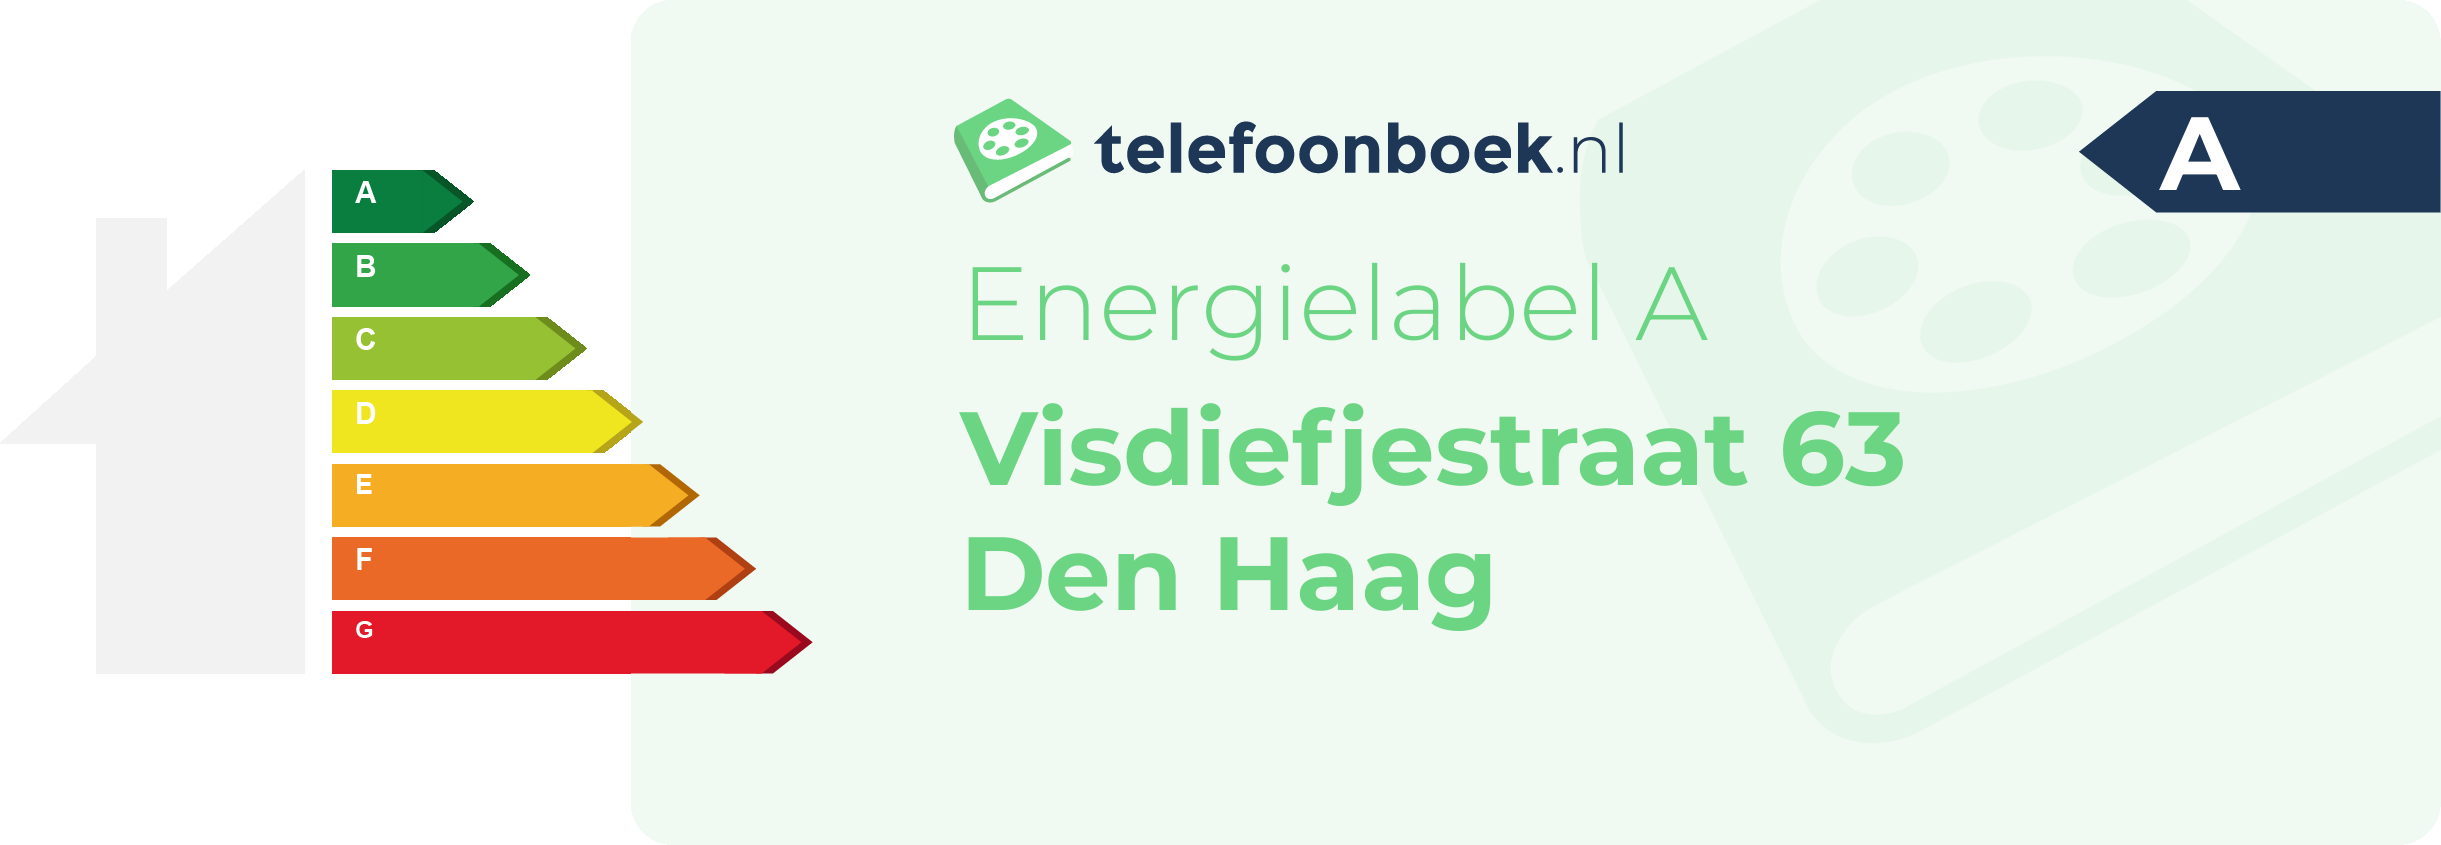 Energielabel Visdiefjestraat 63 Den Haag